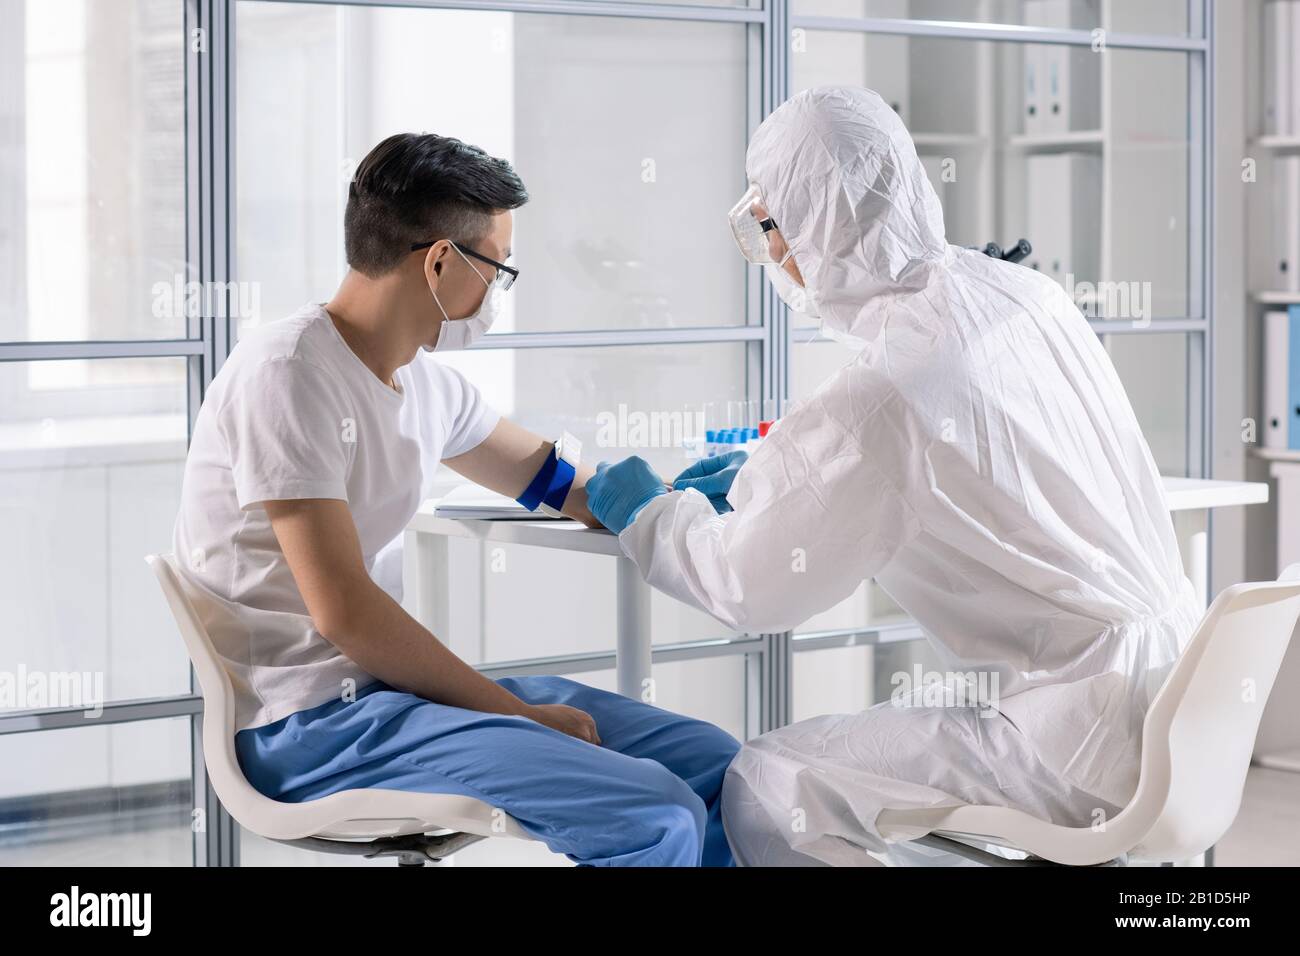 Spécialiste médical en cas de risque biologique, prenant le sang d'un patient asiatique infecté mortel dans la zone de contrôle Banque D'Images